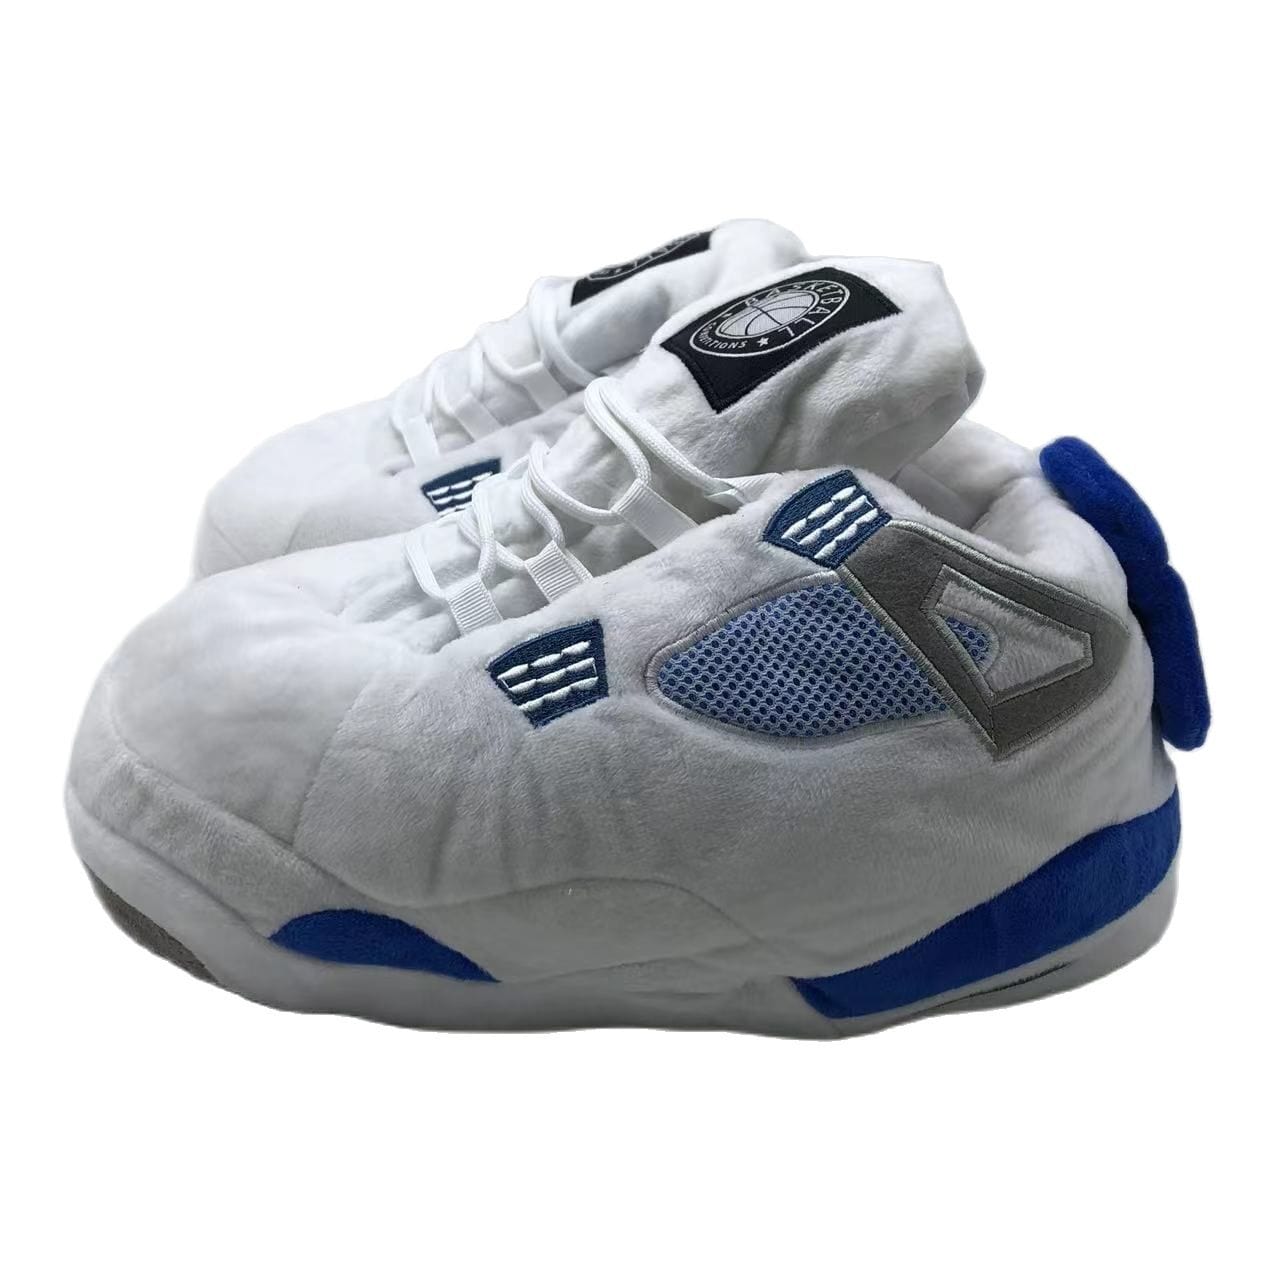 Slip Kickz  Slippers One Size Fits All ( UK 3 - 10.5 ) White and Blue Jordan 4 Novelty Sneaker Slippers